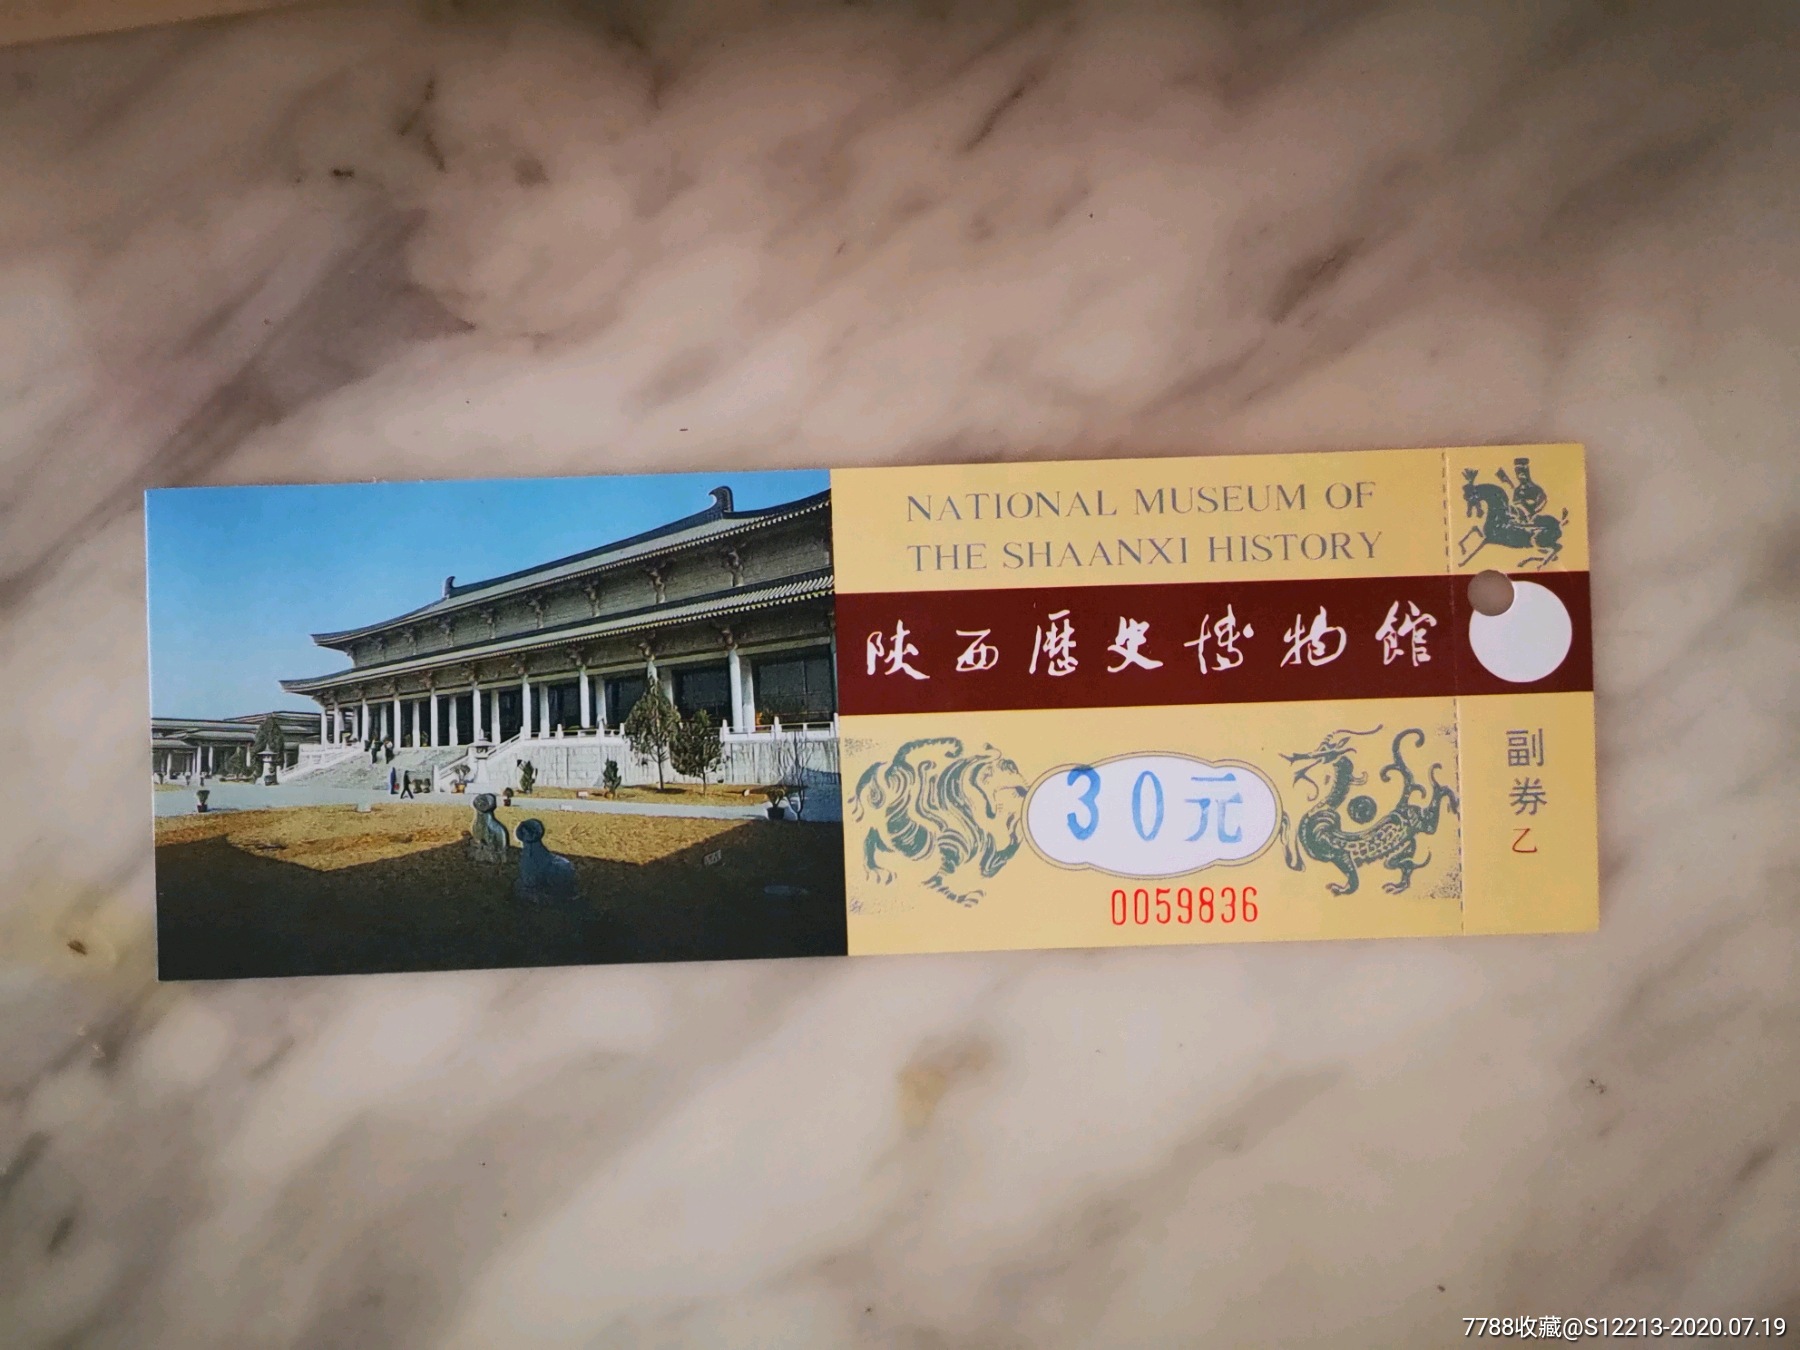 陕西历史博物馆,旅游景点门票_第1张_7788门票收藏